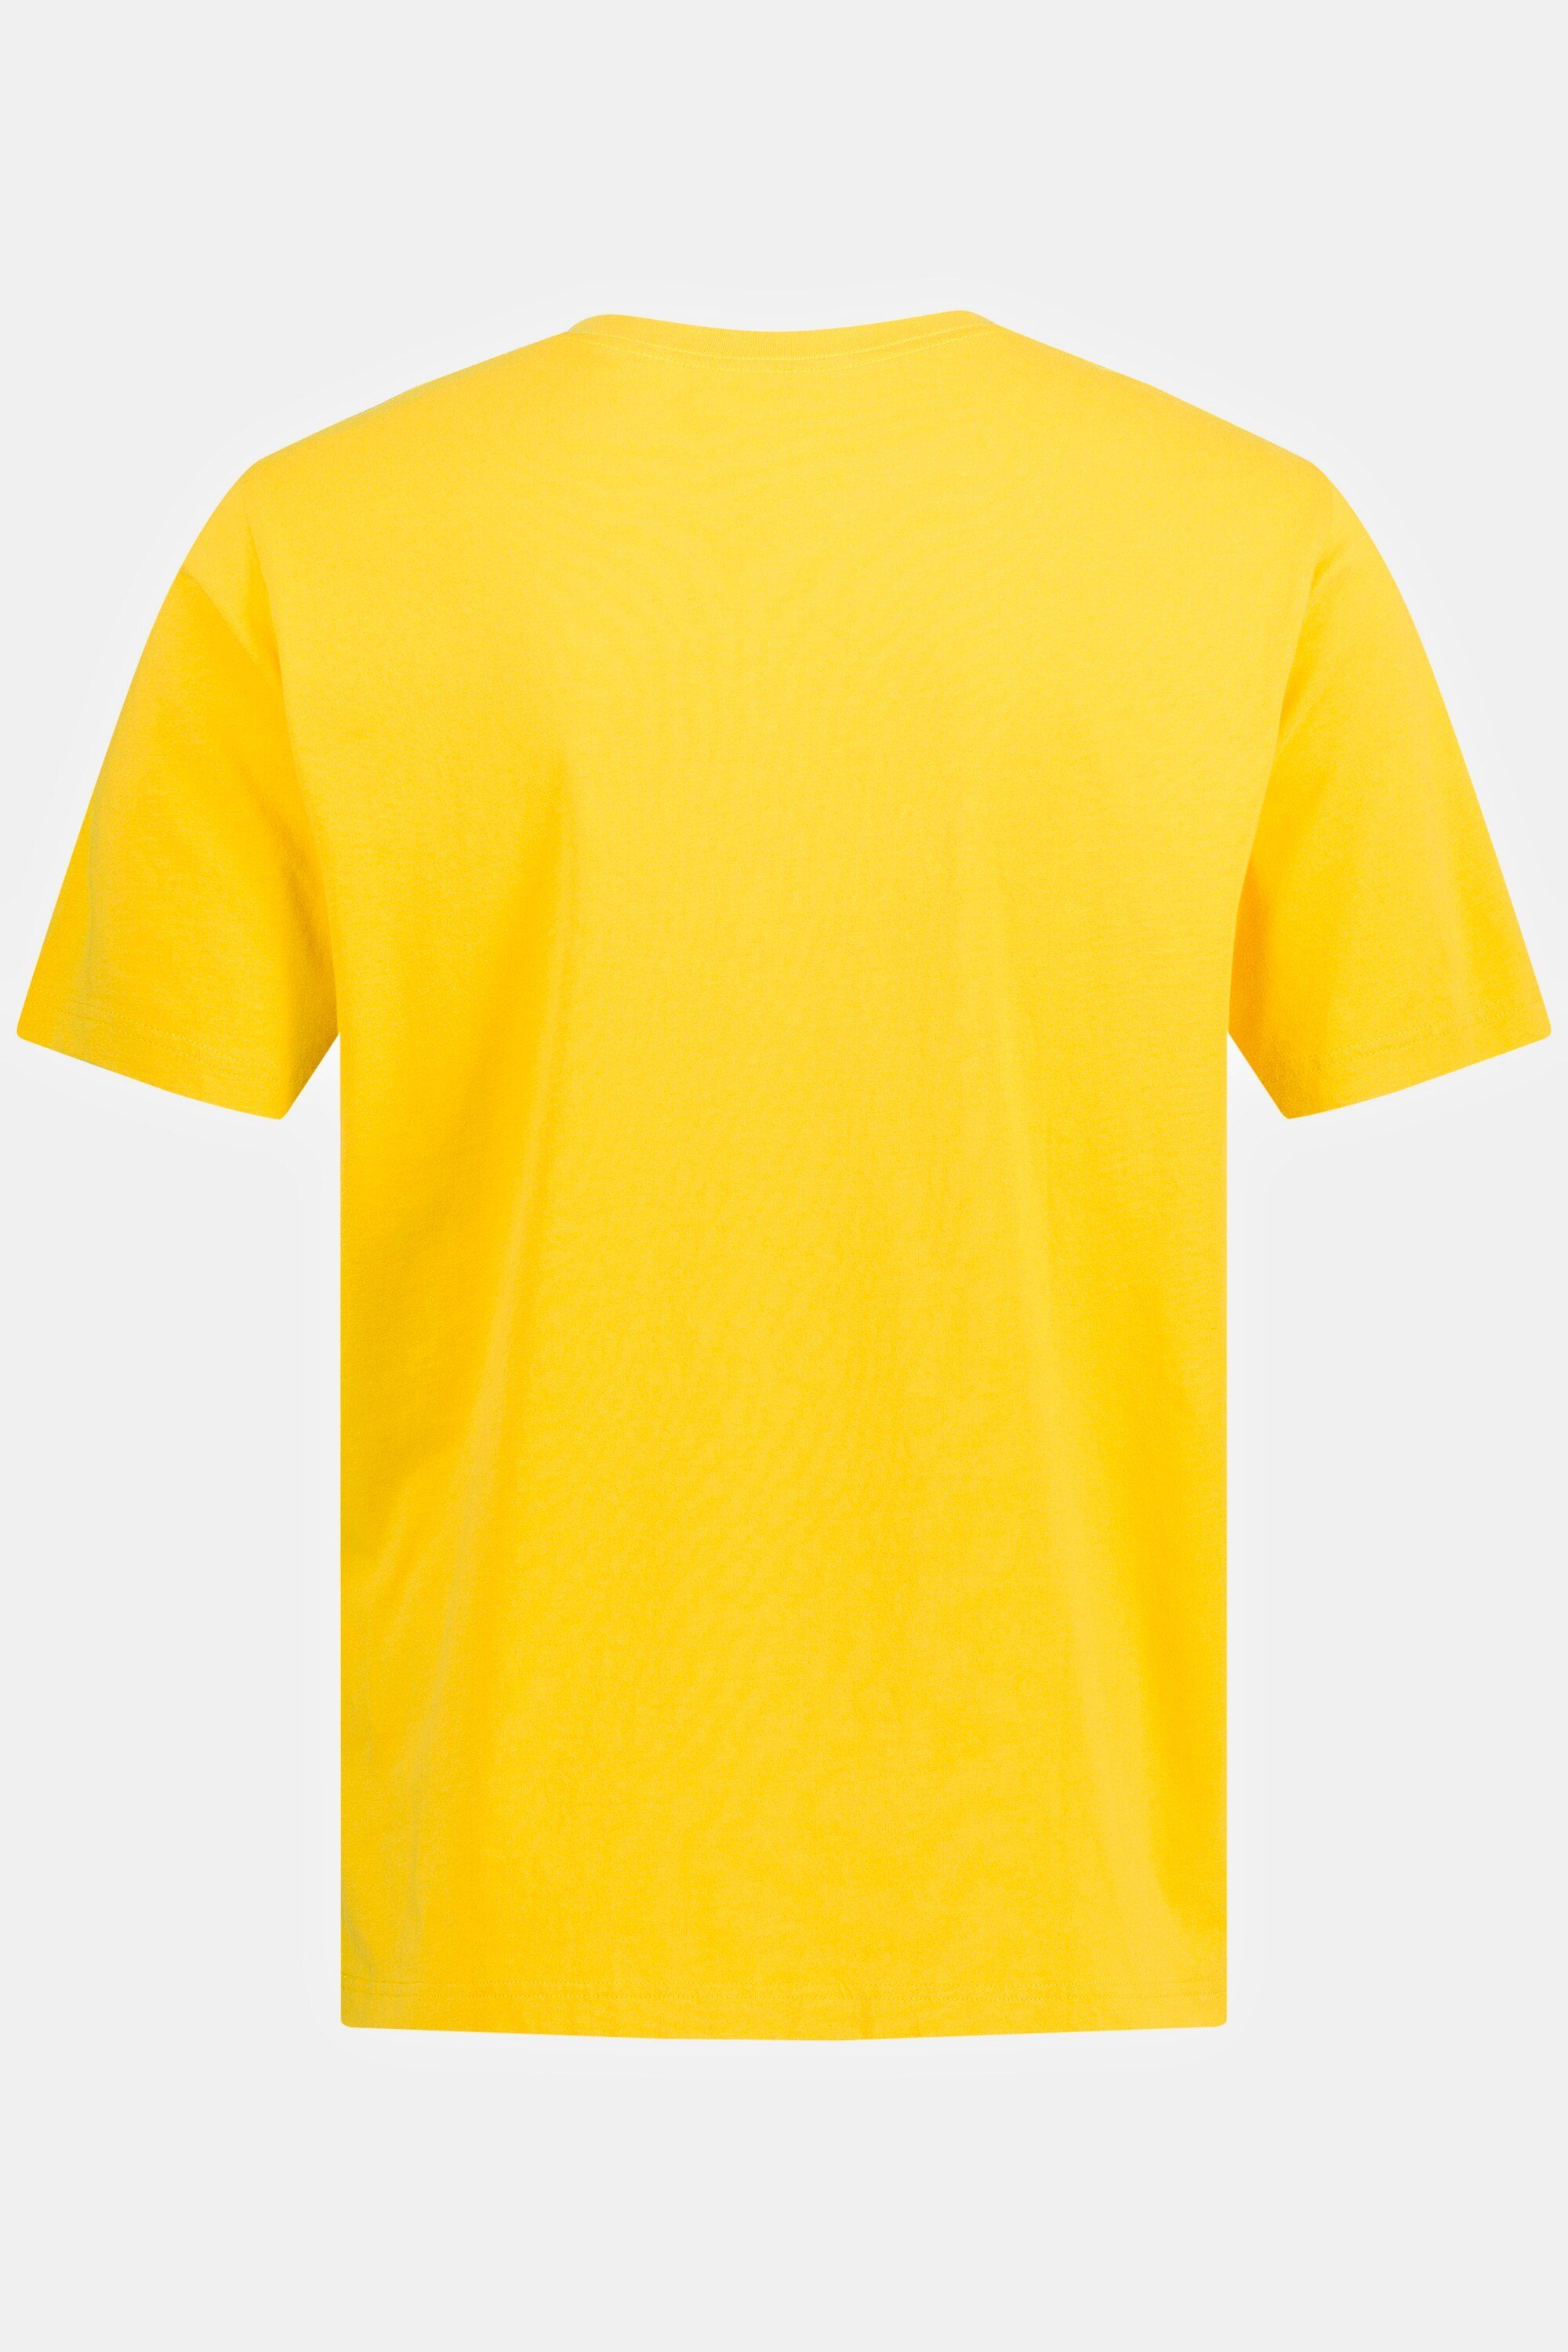 V-Ausschnitt gelb 8XL Basic T-Shirt bis T-Shirt JP1880